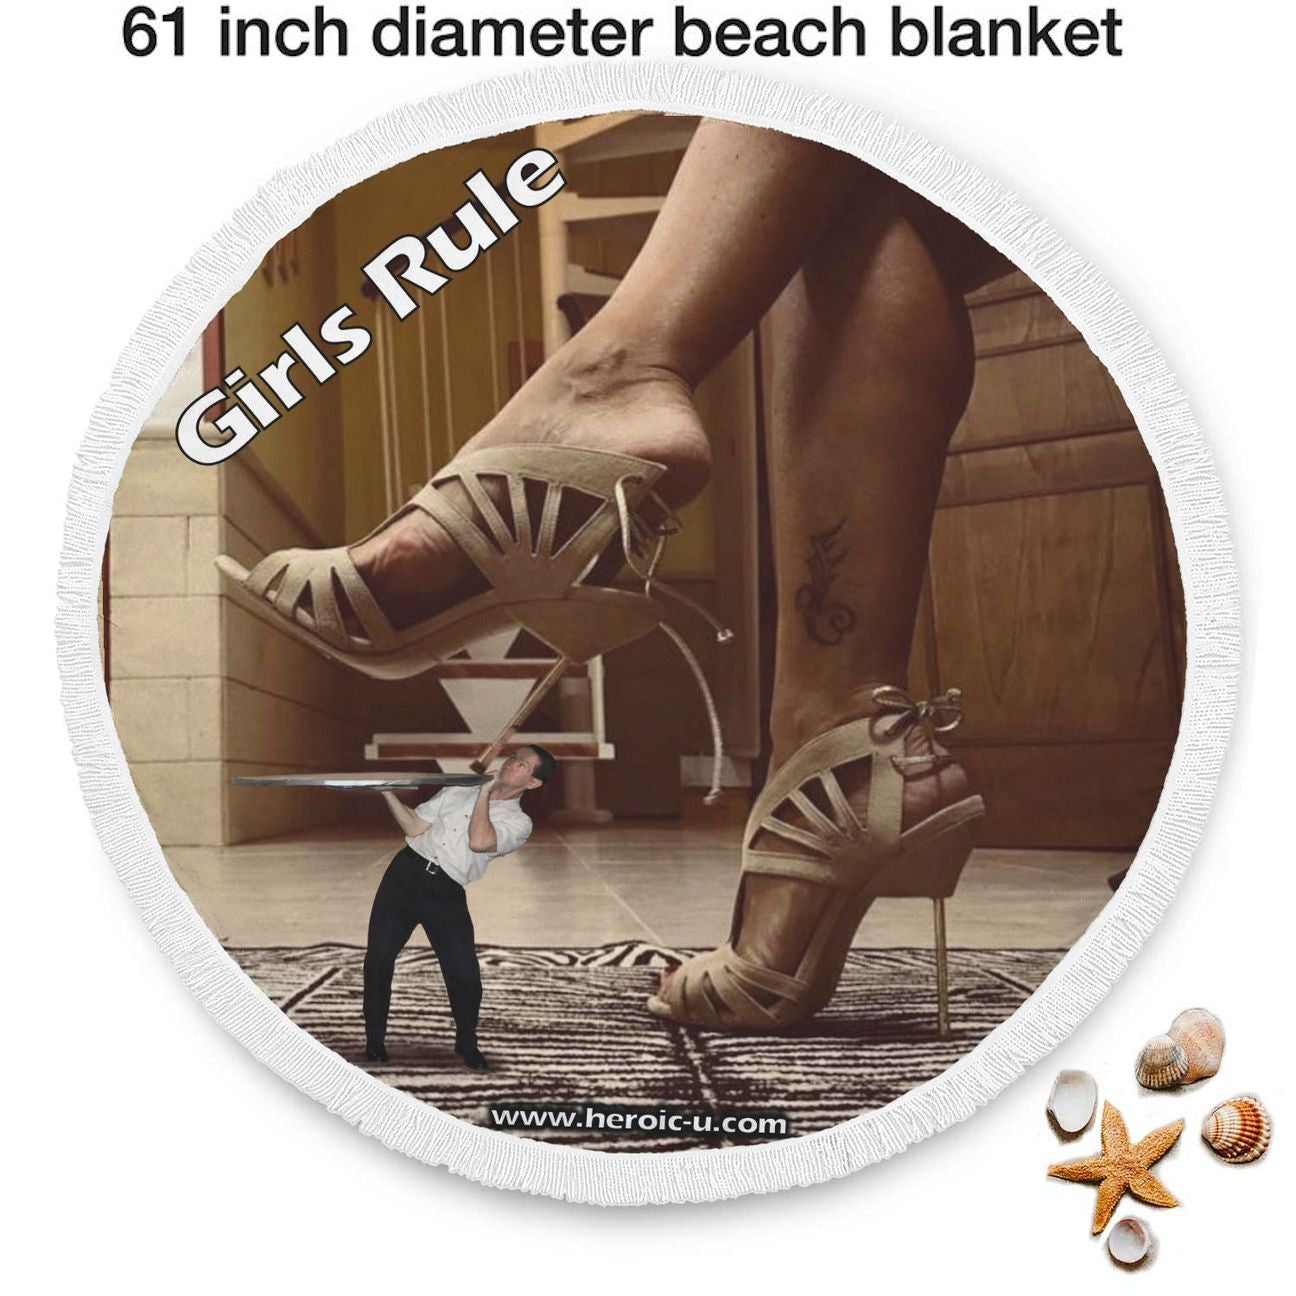 Girls Rule Round Beach Blanket heroicu heroic-u littleruntman girlsrule bed cover blanket ocean view